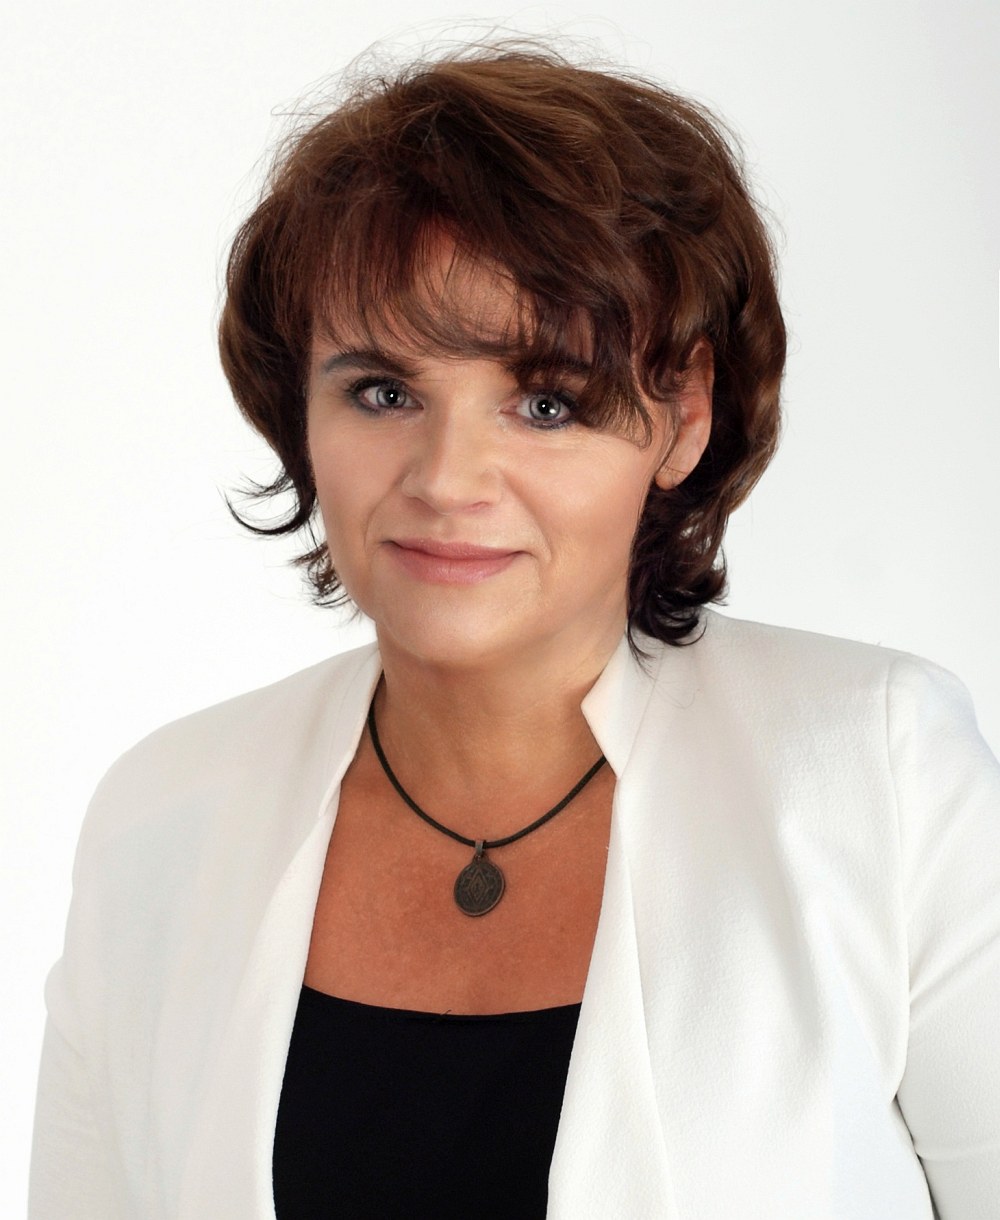 Beata Krudkopad Szaturska